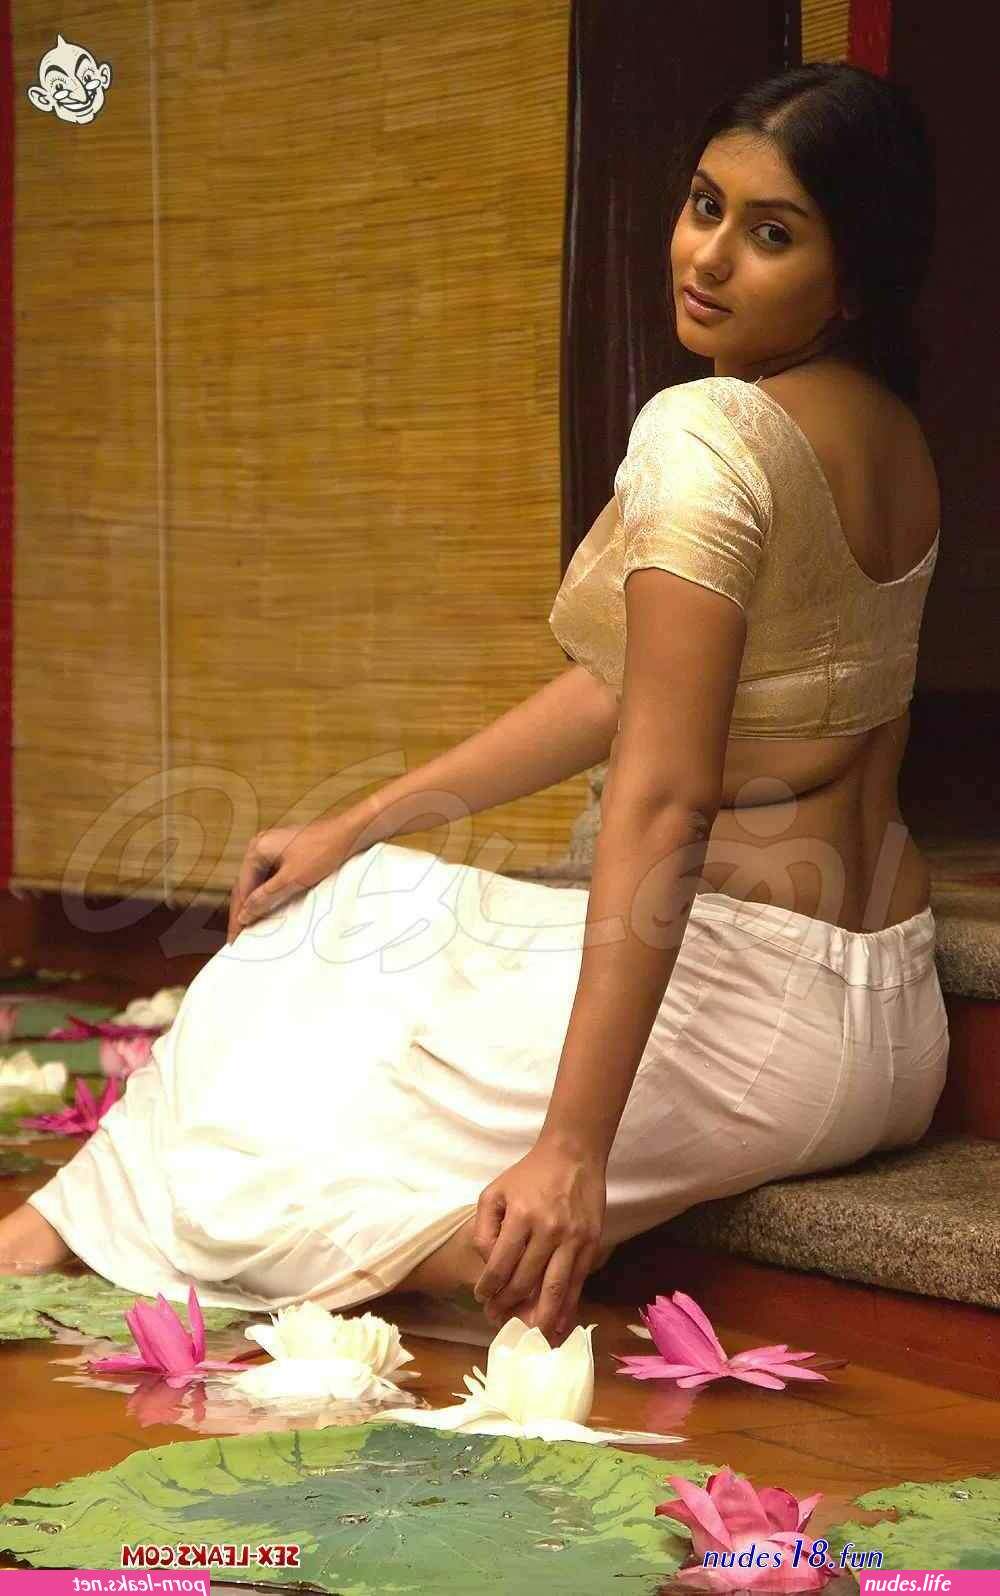 Bollywood Actress In Transparents Dresses Porn Hq - Indian actress nude bollywood x-ray transparent clothes saree without bra  boobs big ass kamapics.com - Nudes photos